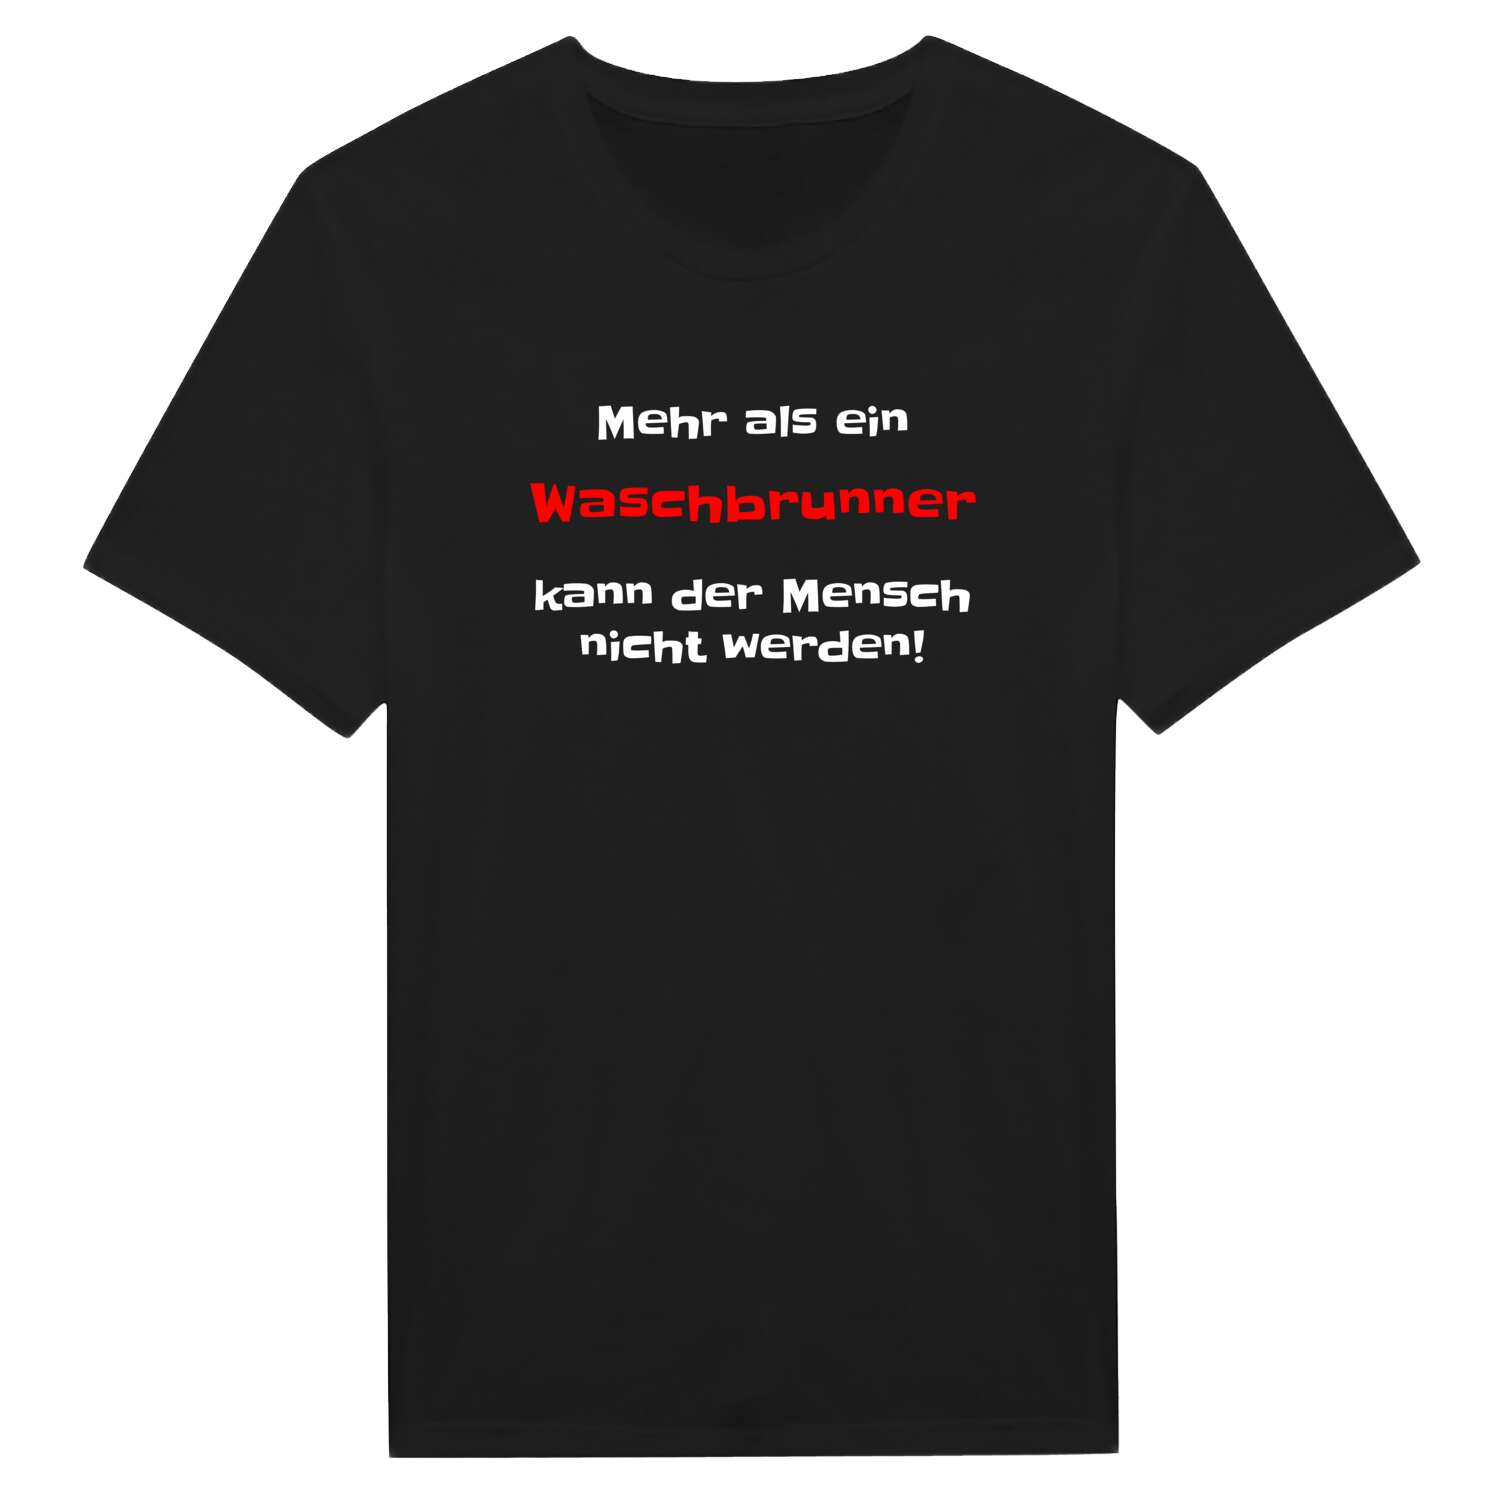 Waschbrunn T-Shirt »Mehr als ein«